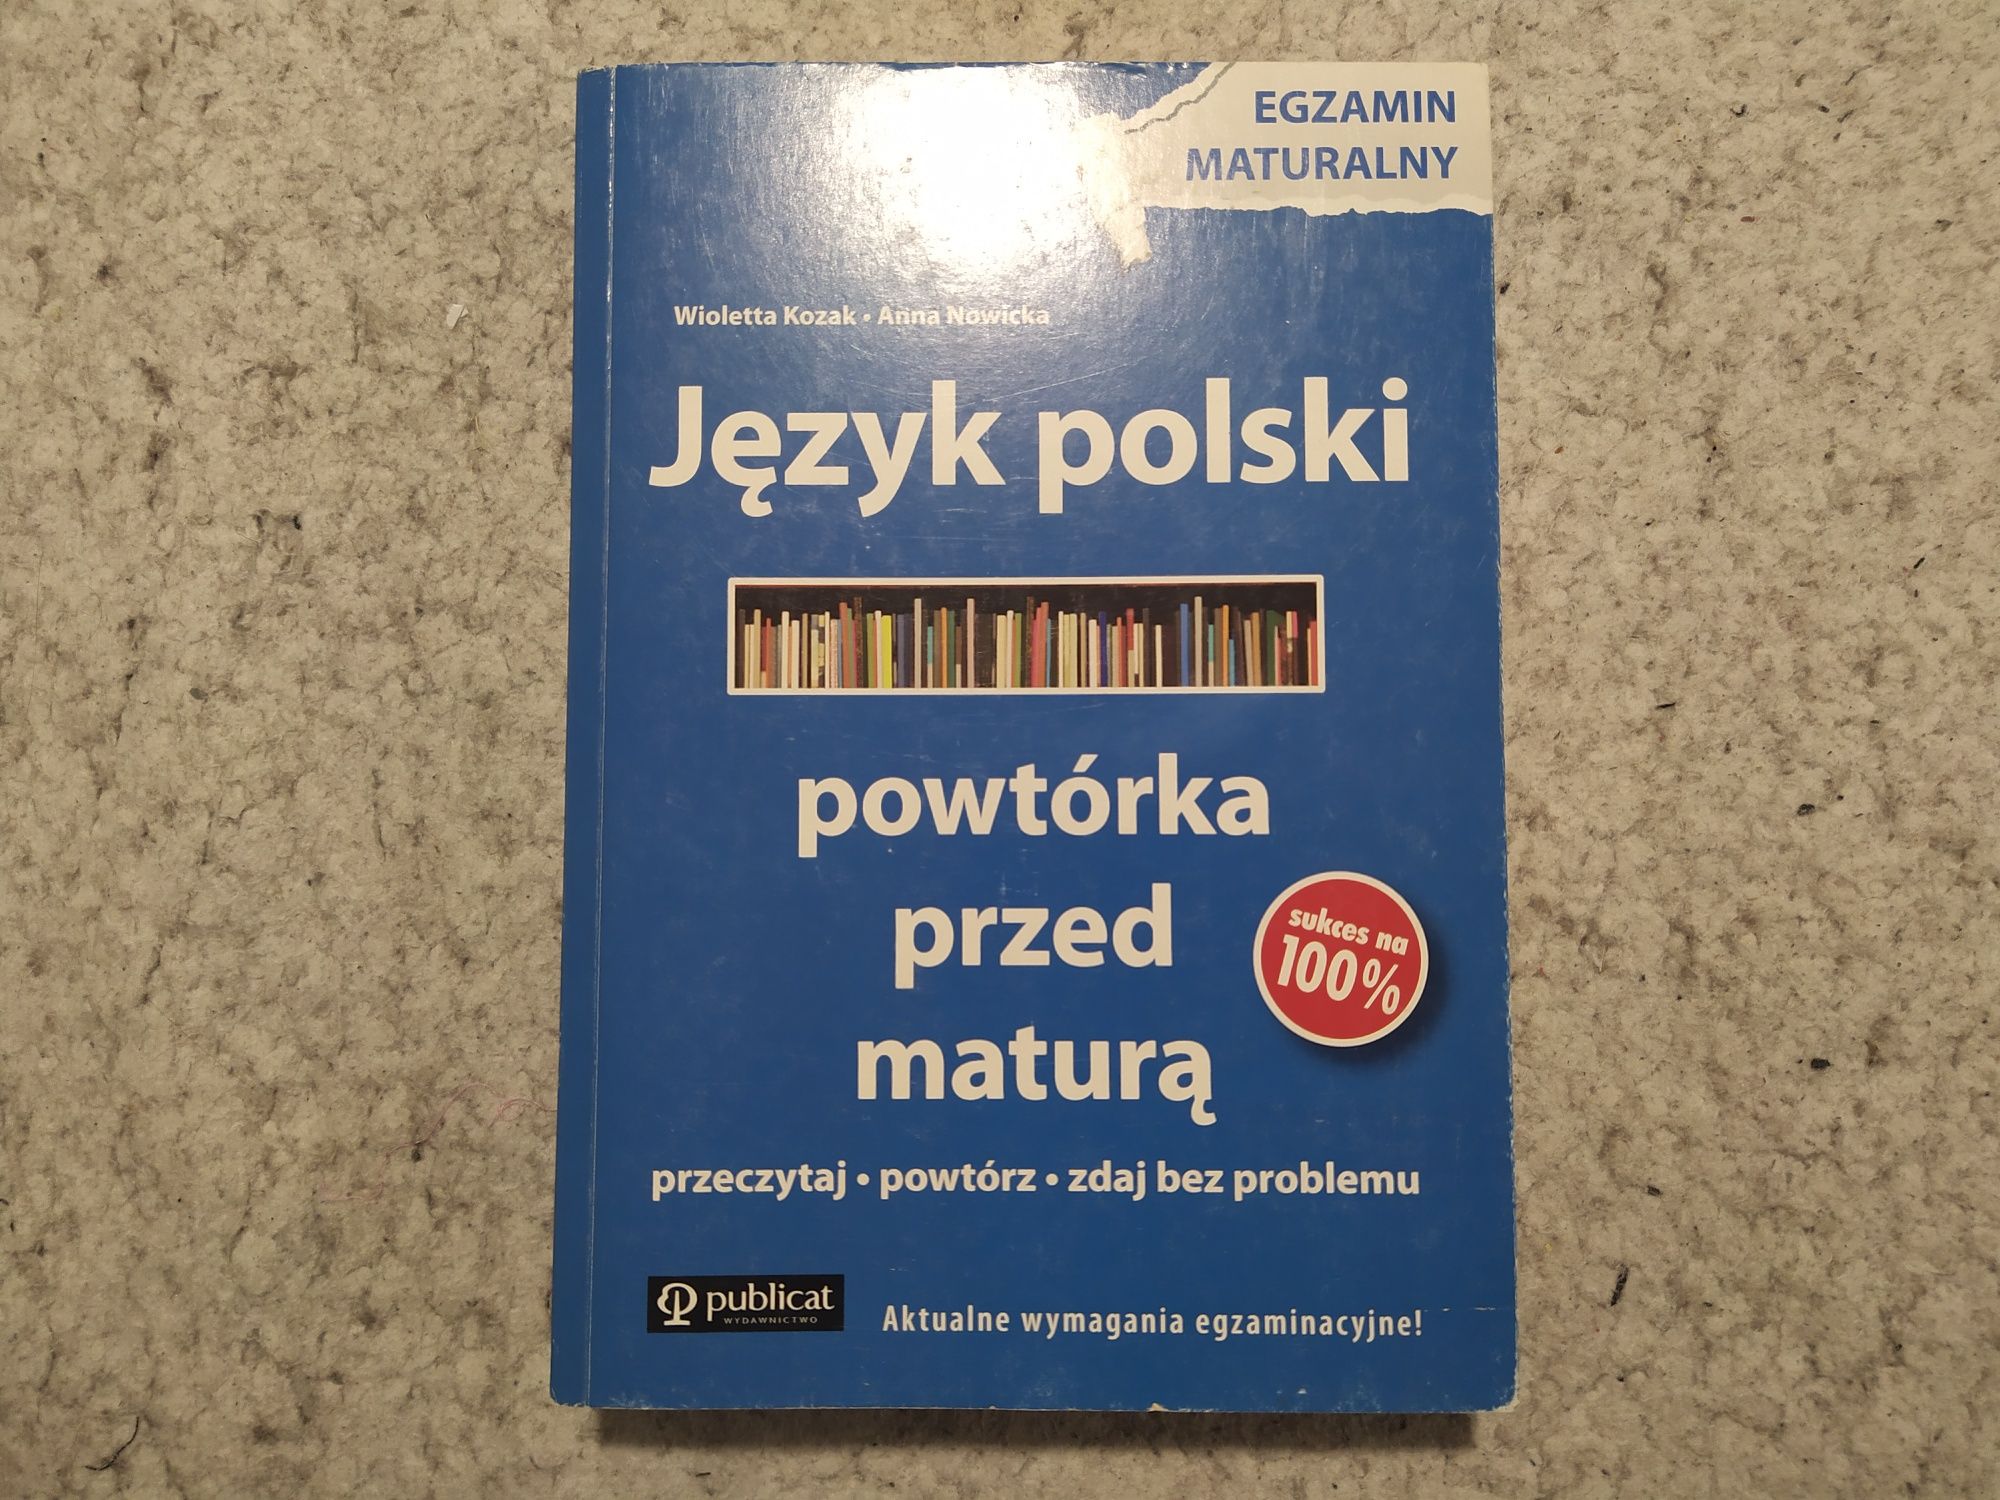 Język Polski powtórka przed maturą, Wioletta Kozak i Anna Nowicka